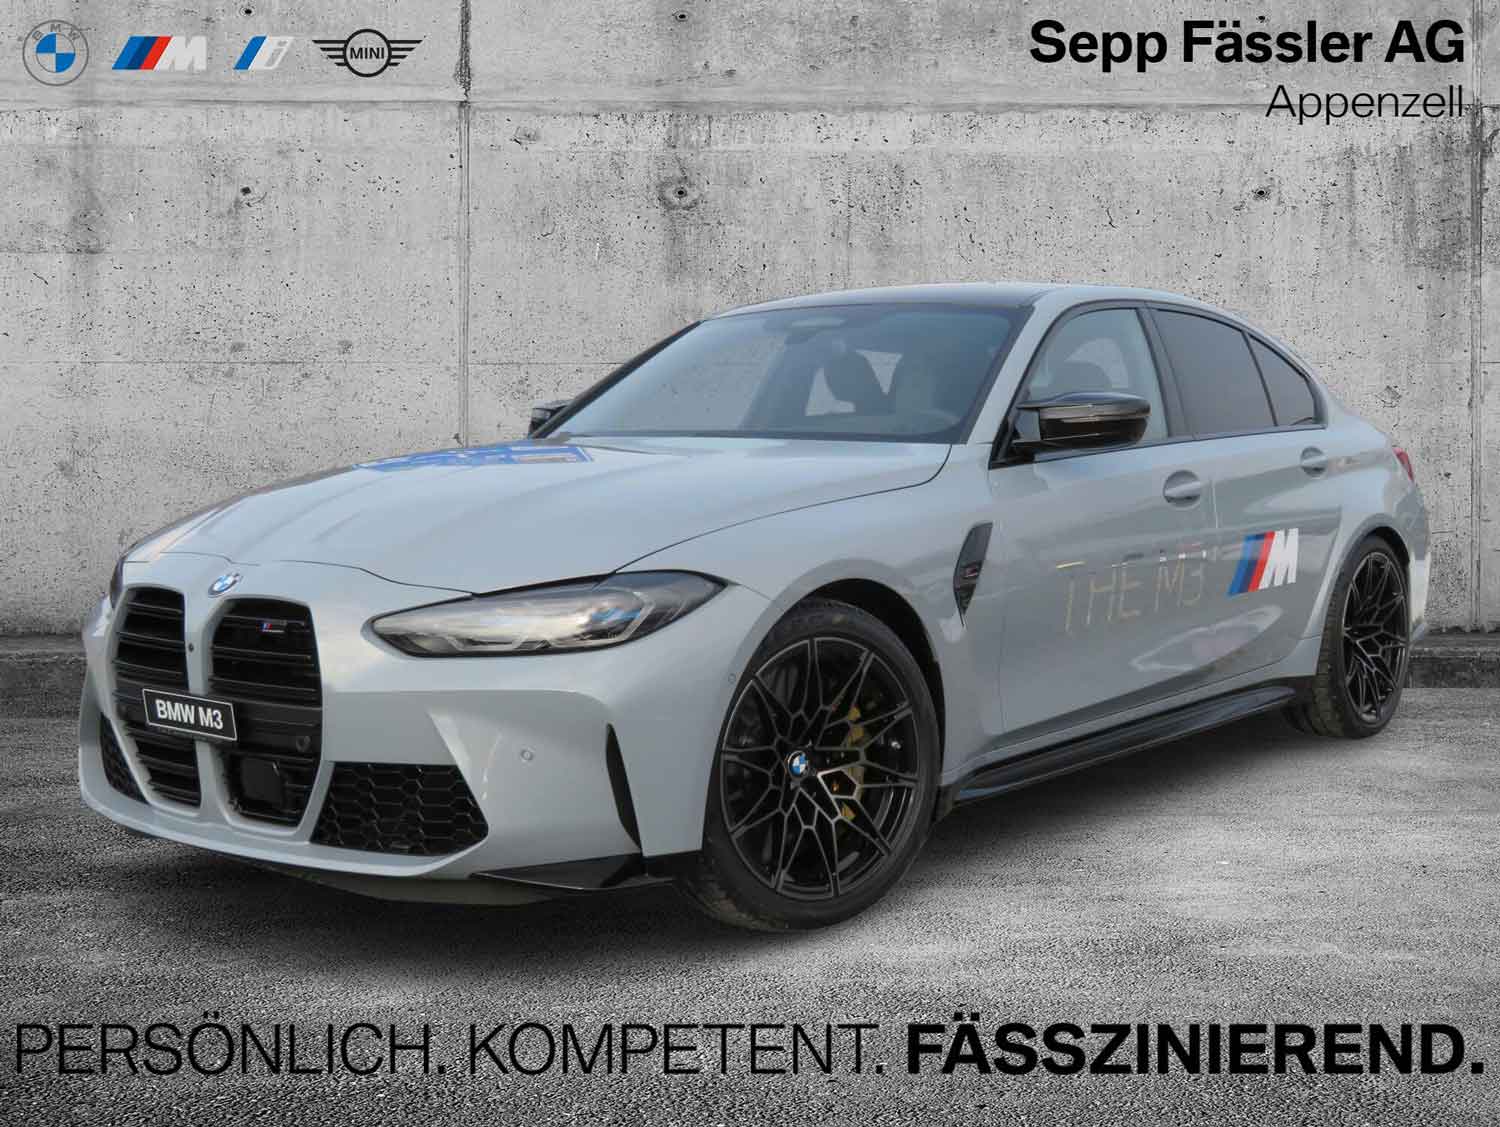 BMW M3 Sepp Fässler AG - Remove24.ch virtueller Hintergrund